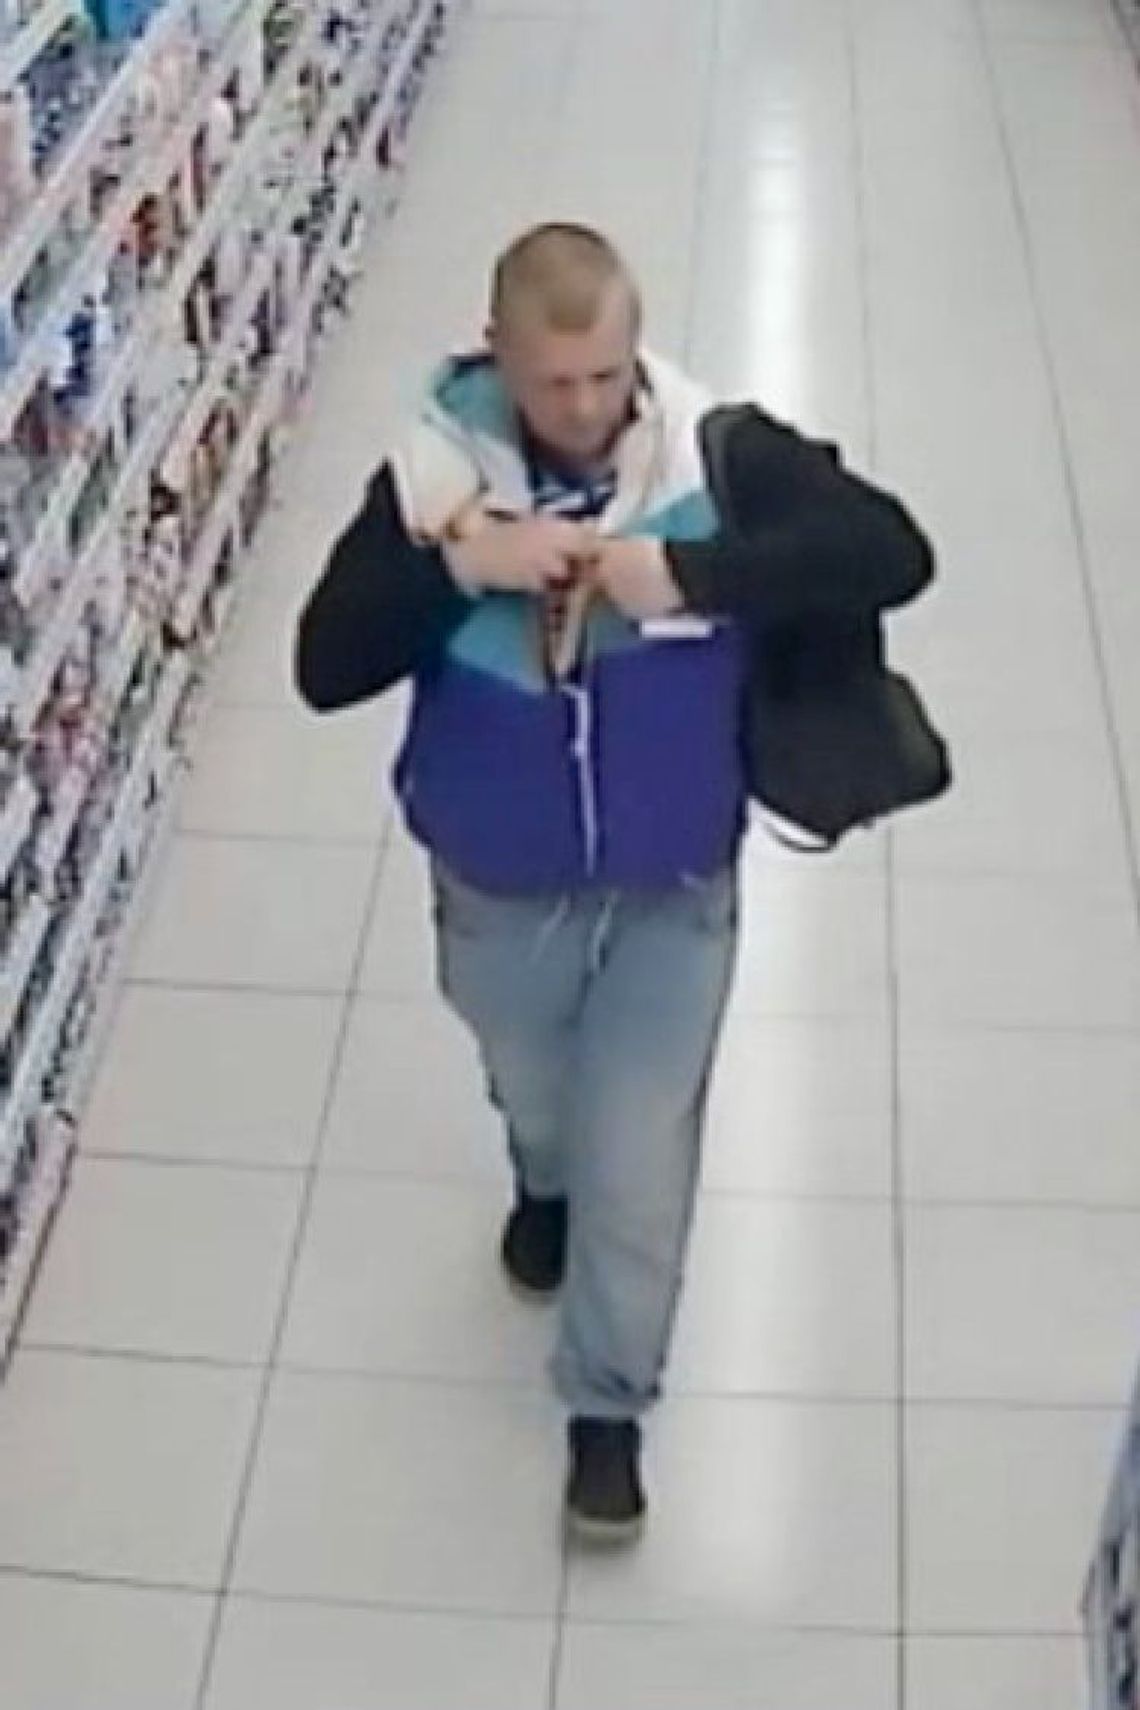 Ukradł artykuły drogeryjne ze sklepu w Koronowie. Rozpoznajesz go? [FOTO]